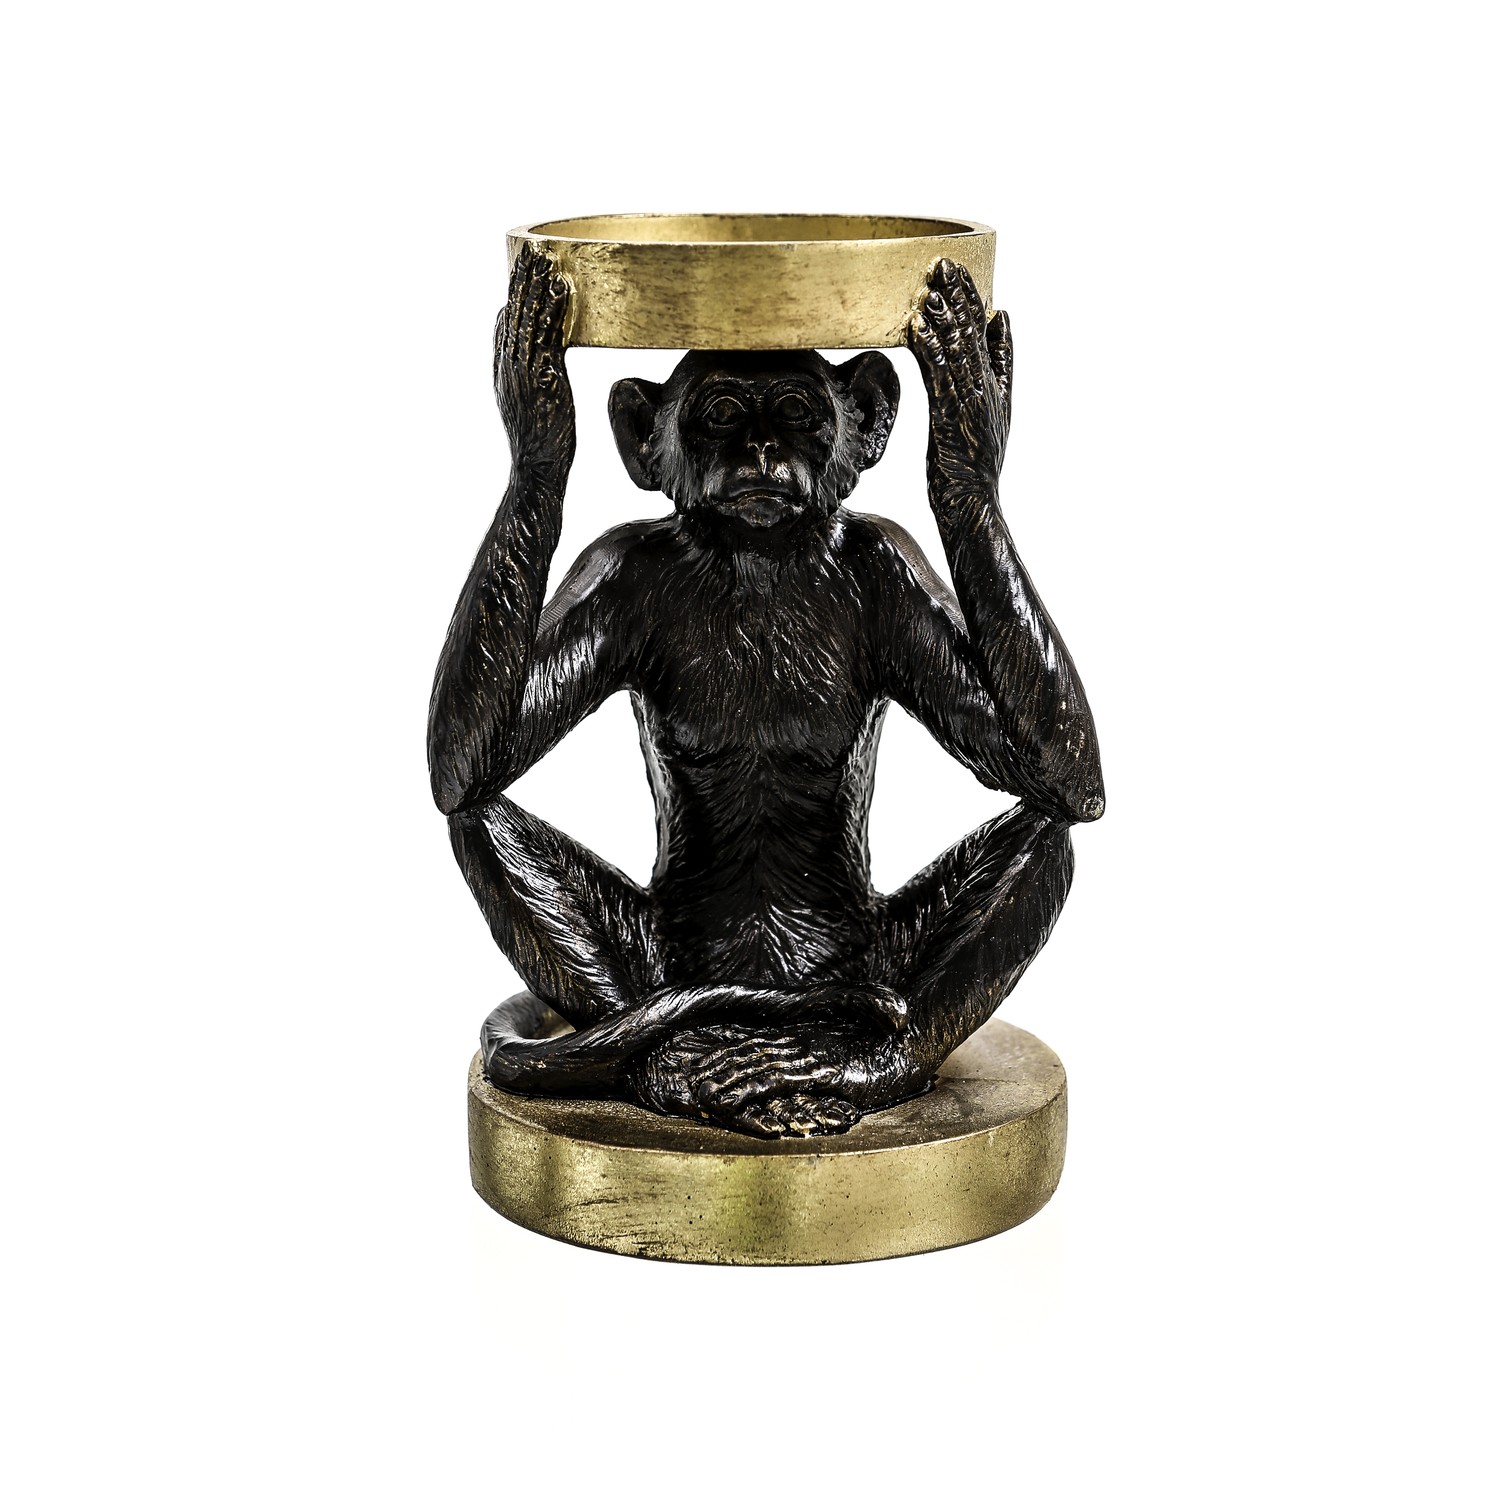 Small Monkey Candle Holder - Image 1